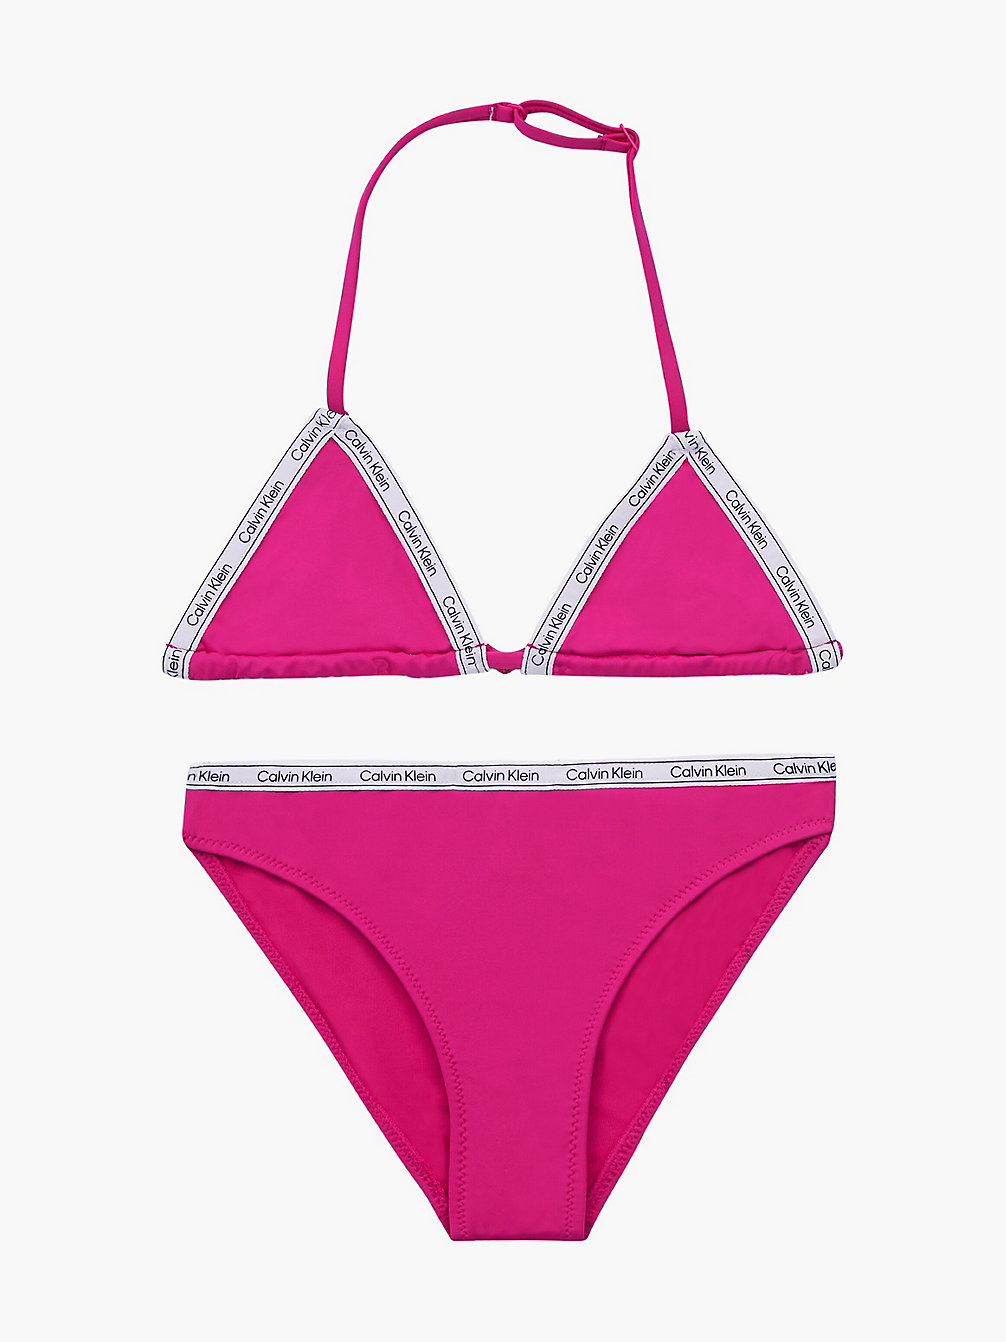 ROYAL PINK > Bikini-Set Mit Triangel-Top Für Mädchen - Logo Tape > undefined girls - Calvin Klein